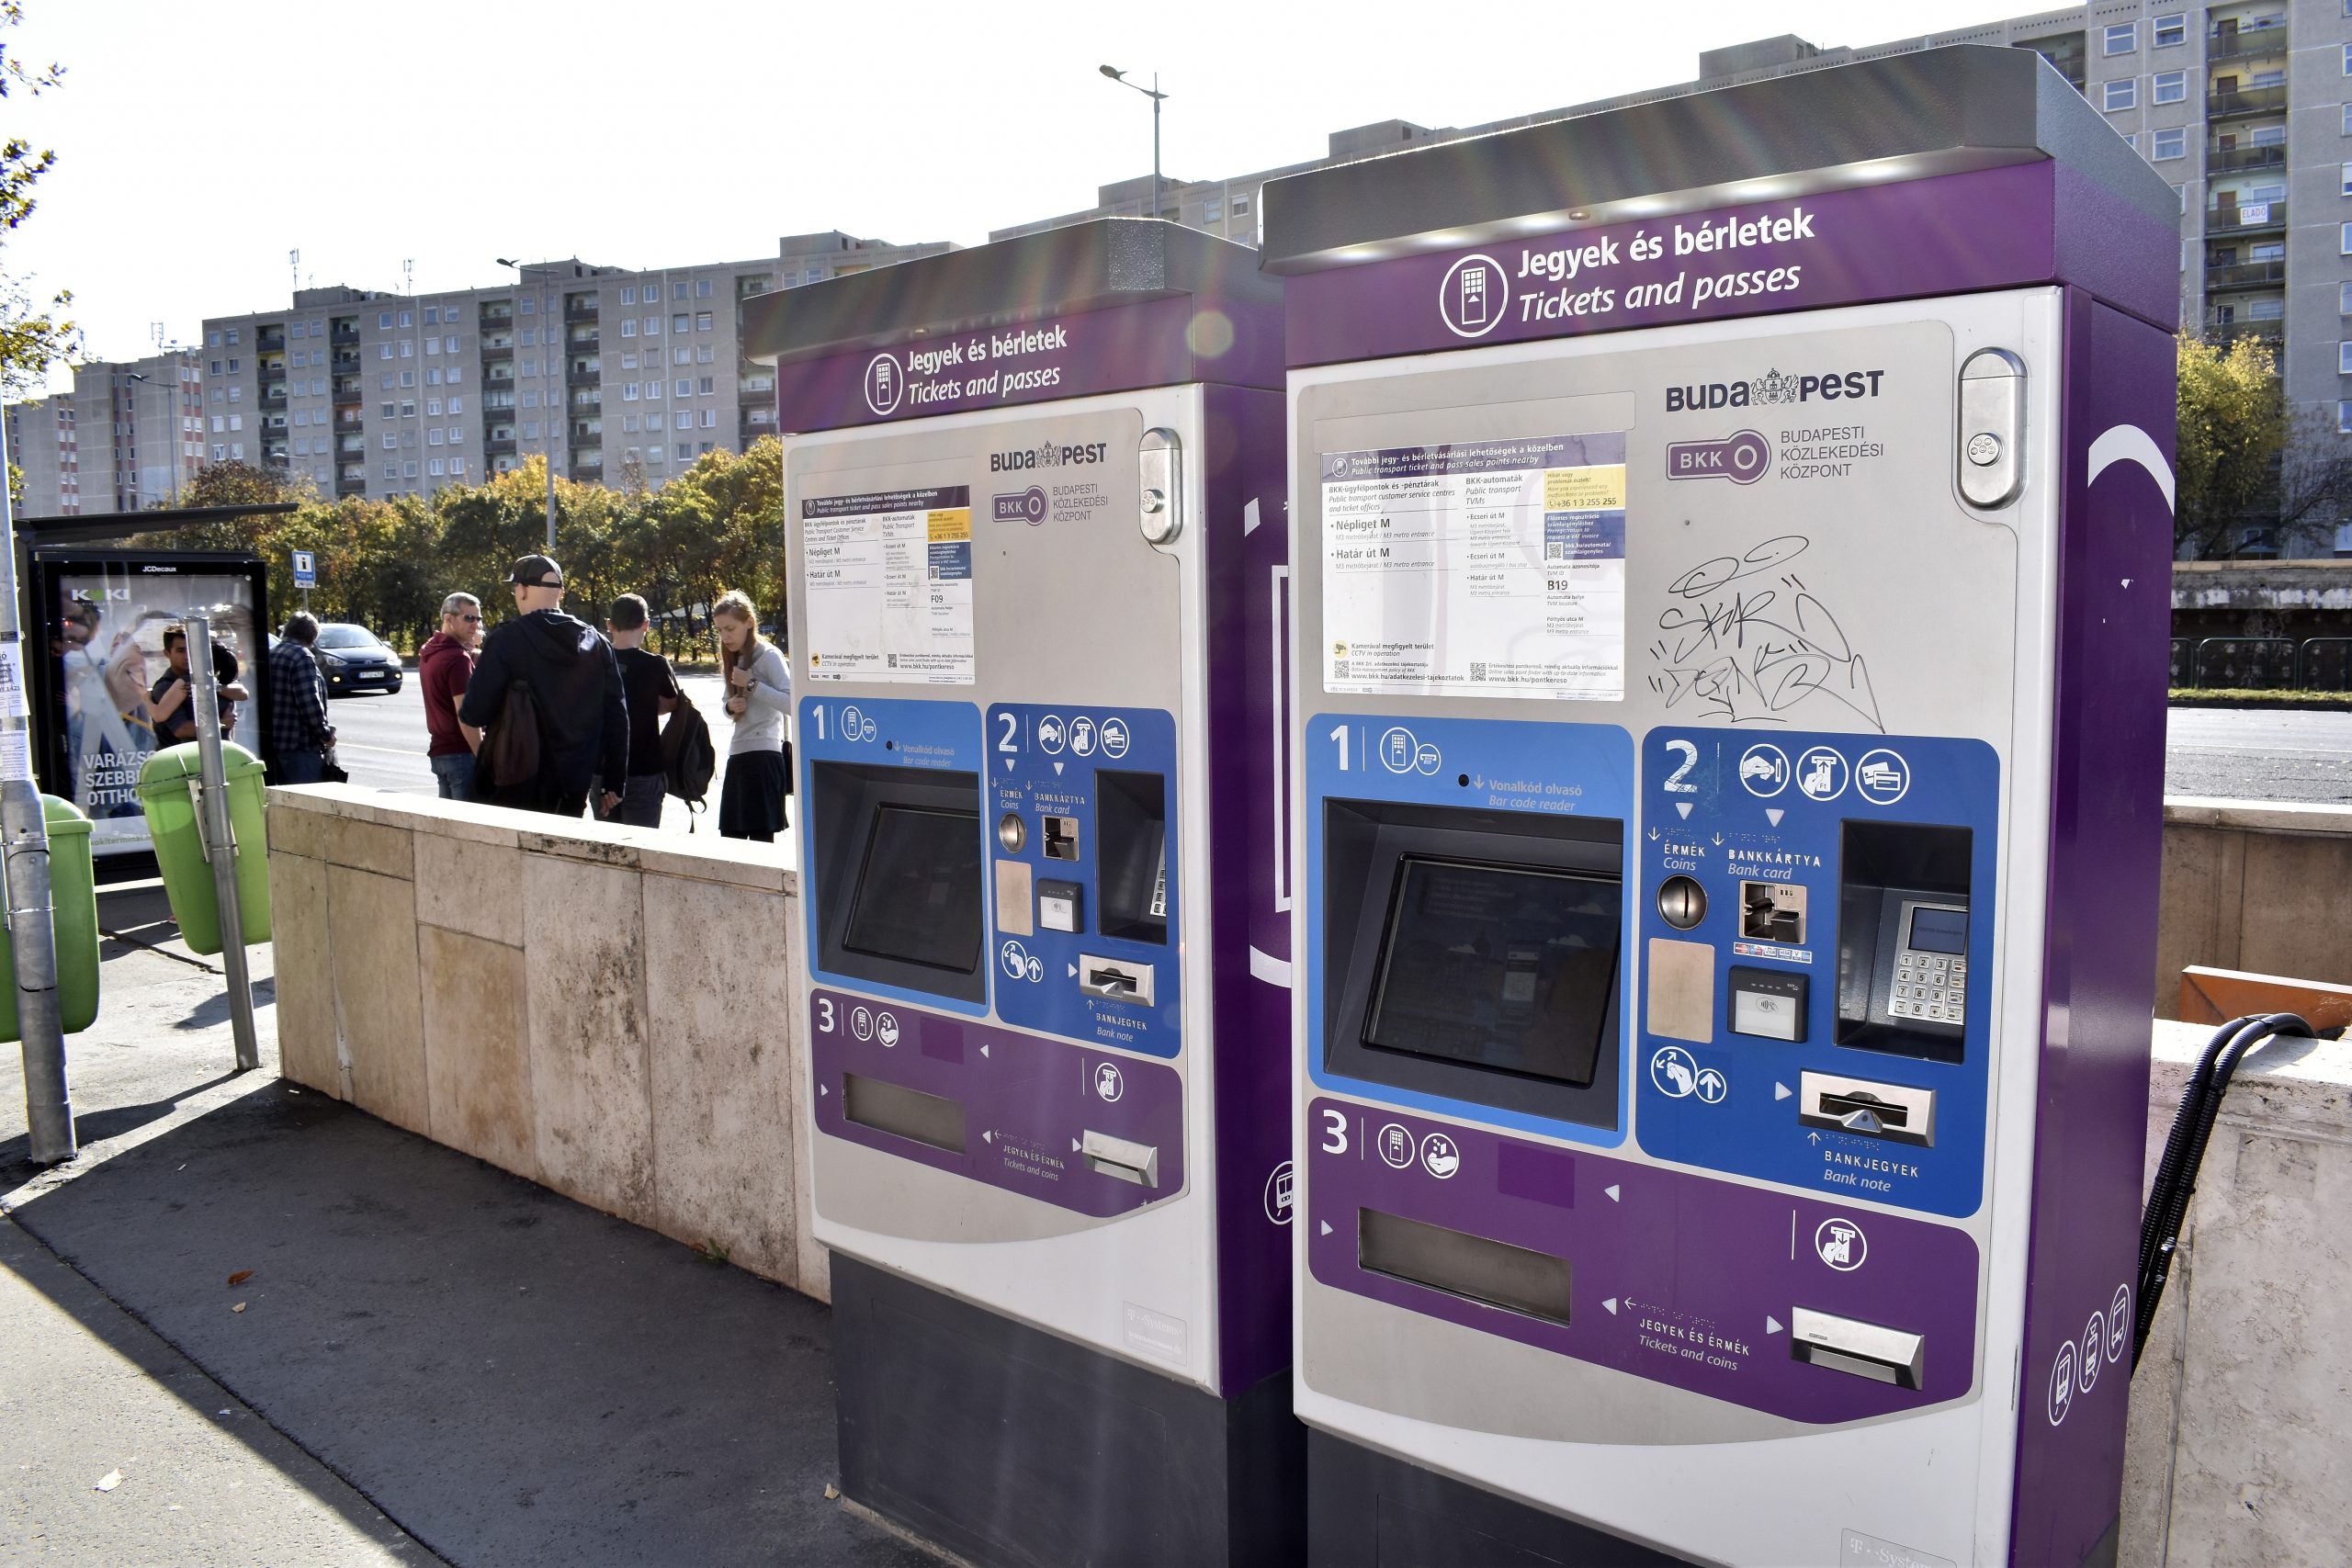 Zeitabhängige Fahrkarten für öffentlichen Nahverkehr in Budapest erwartet